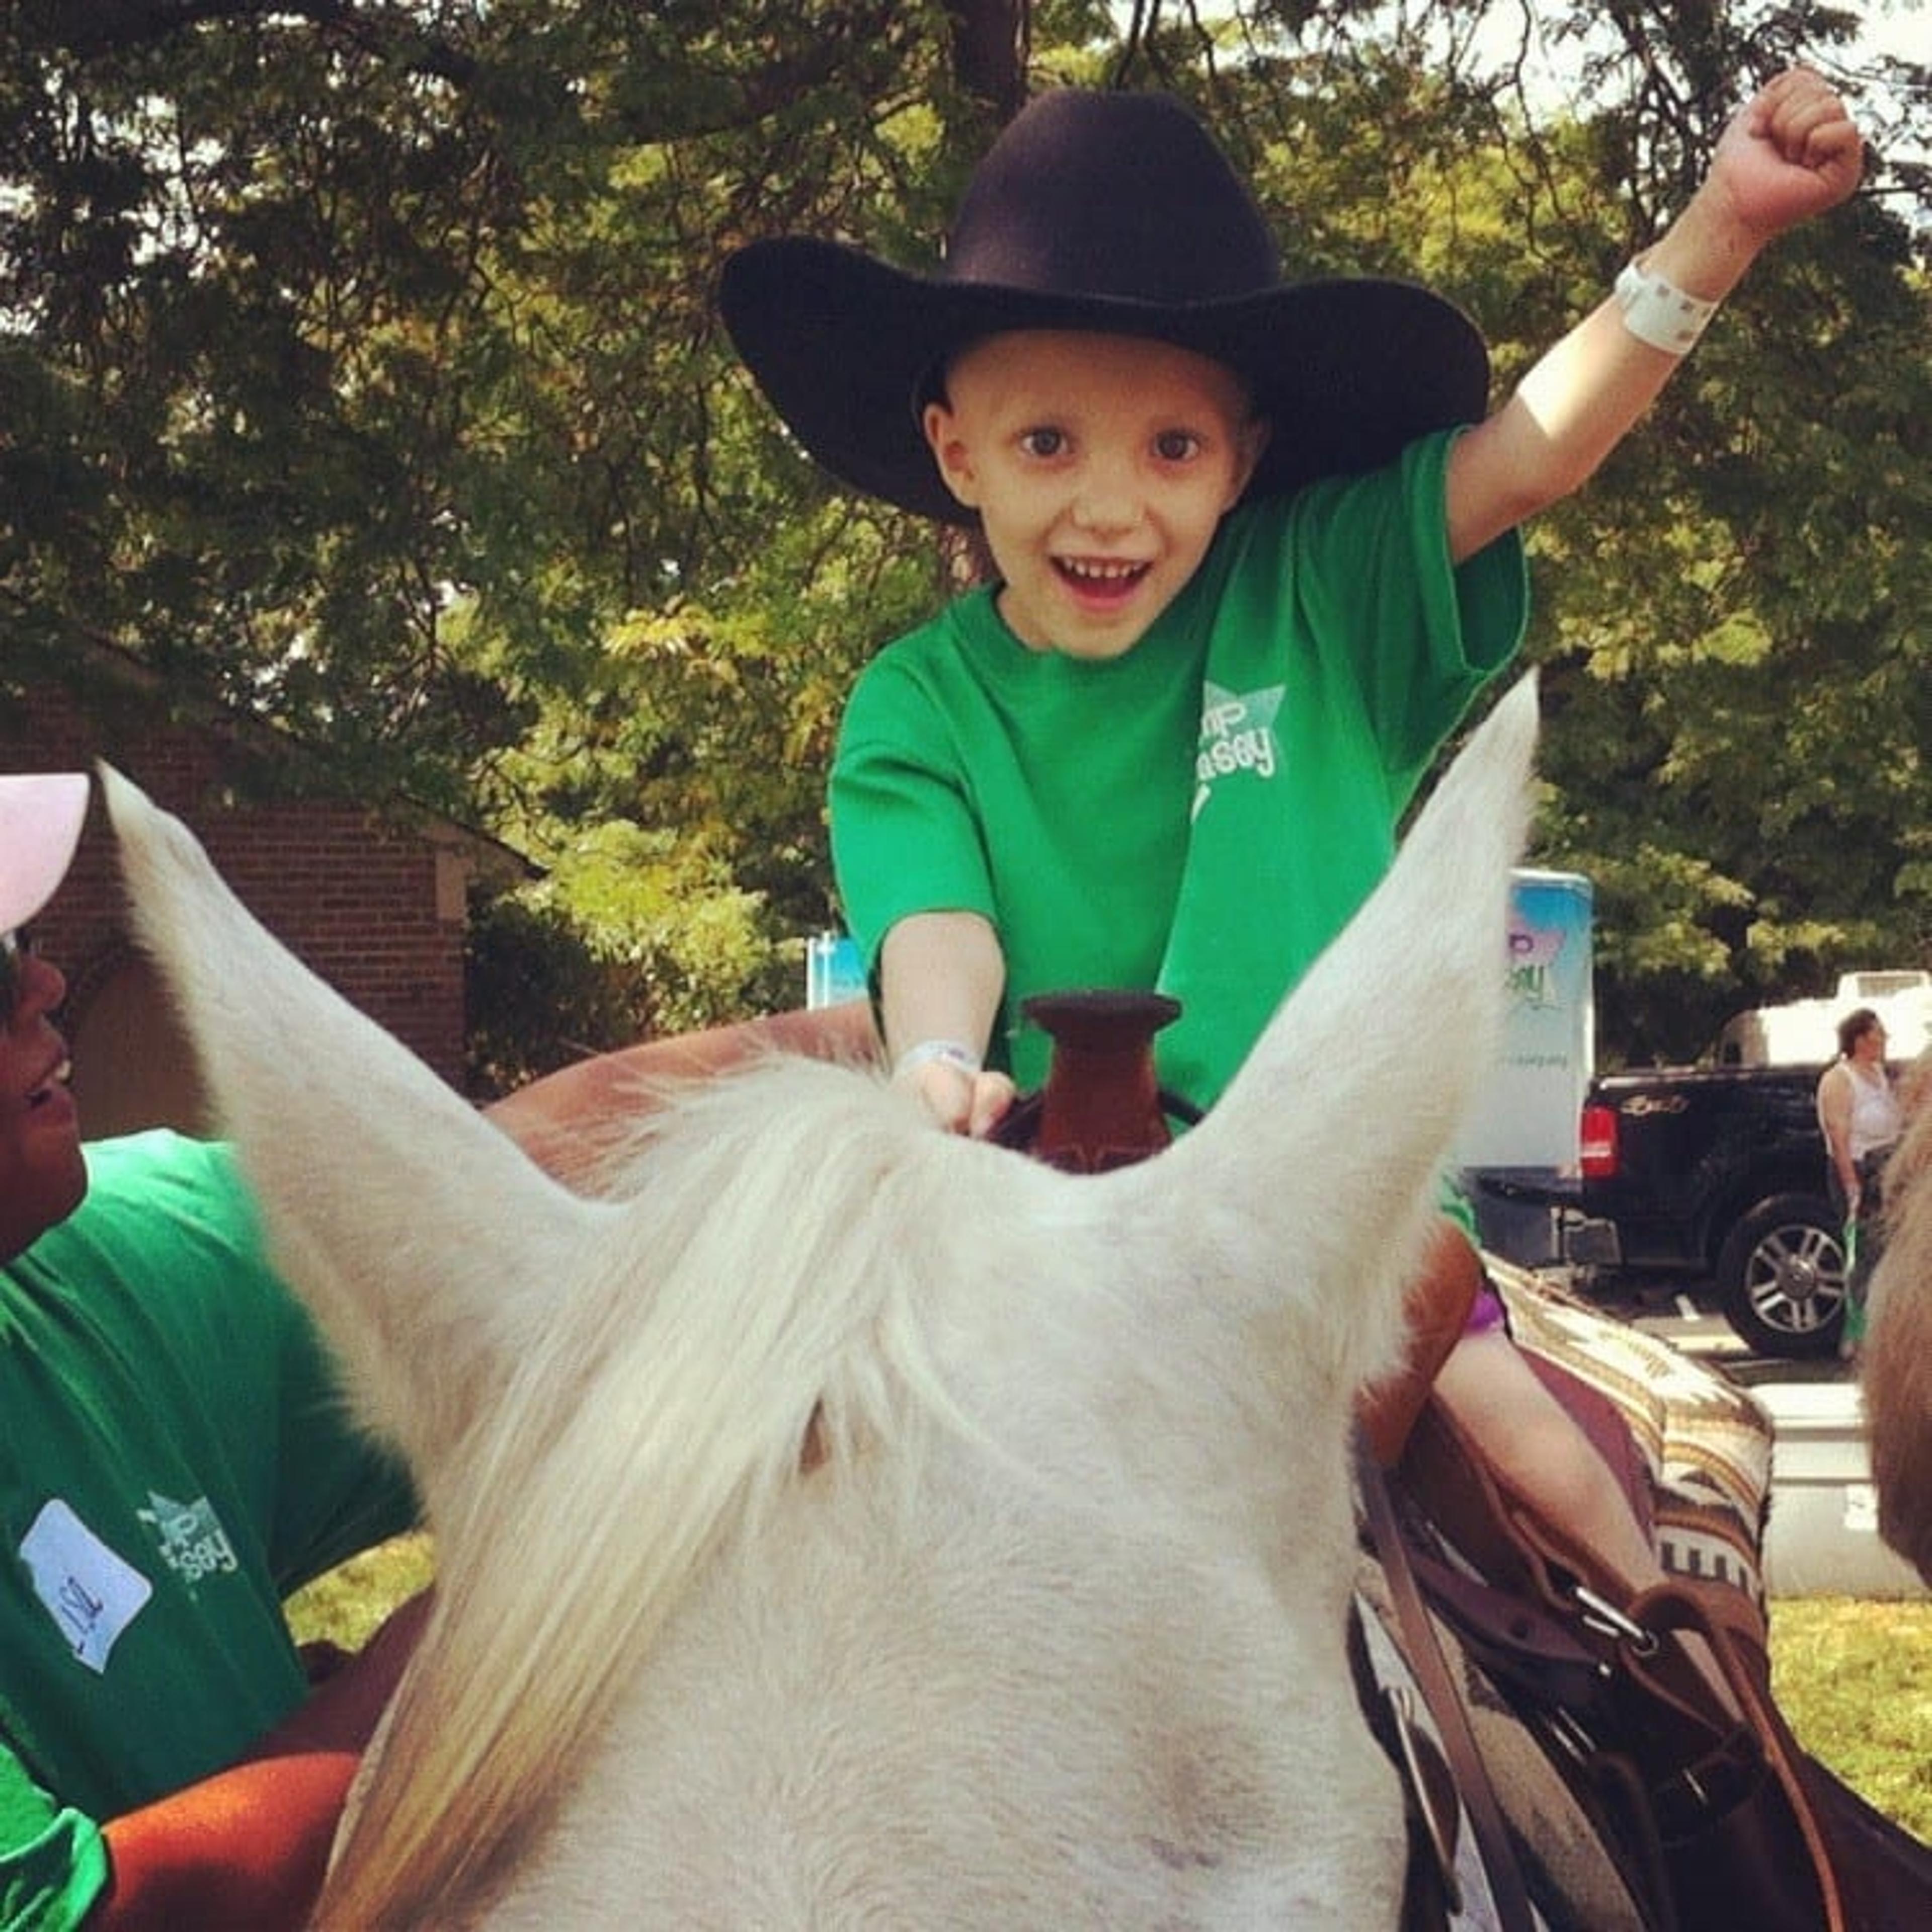 little boy smiling on horseback